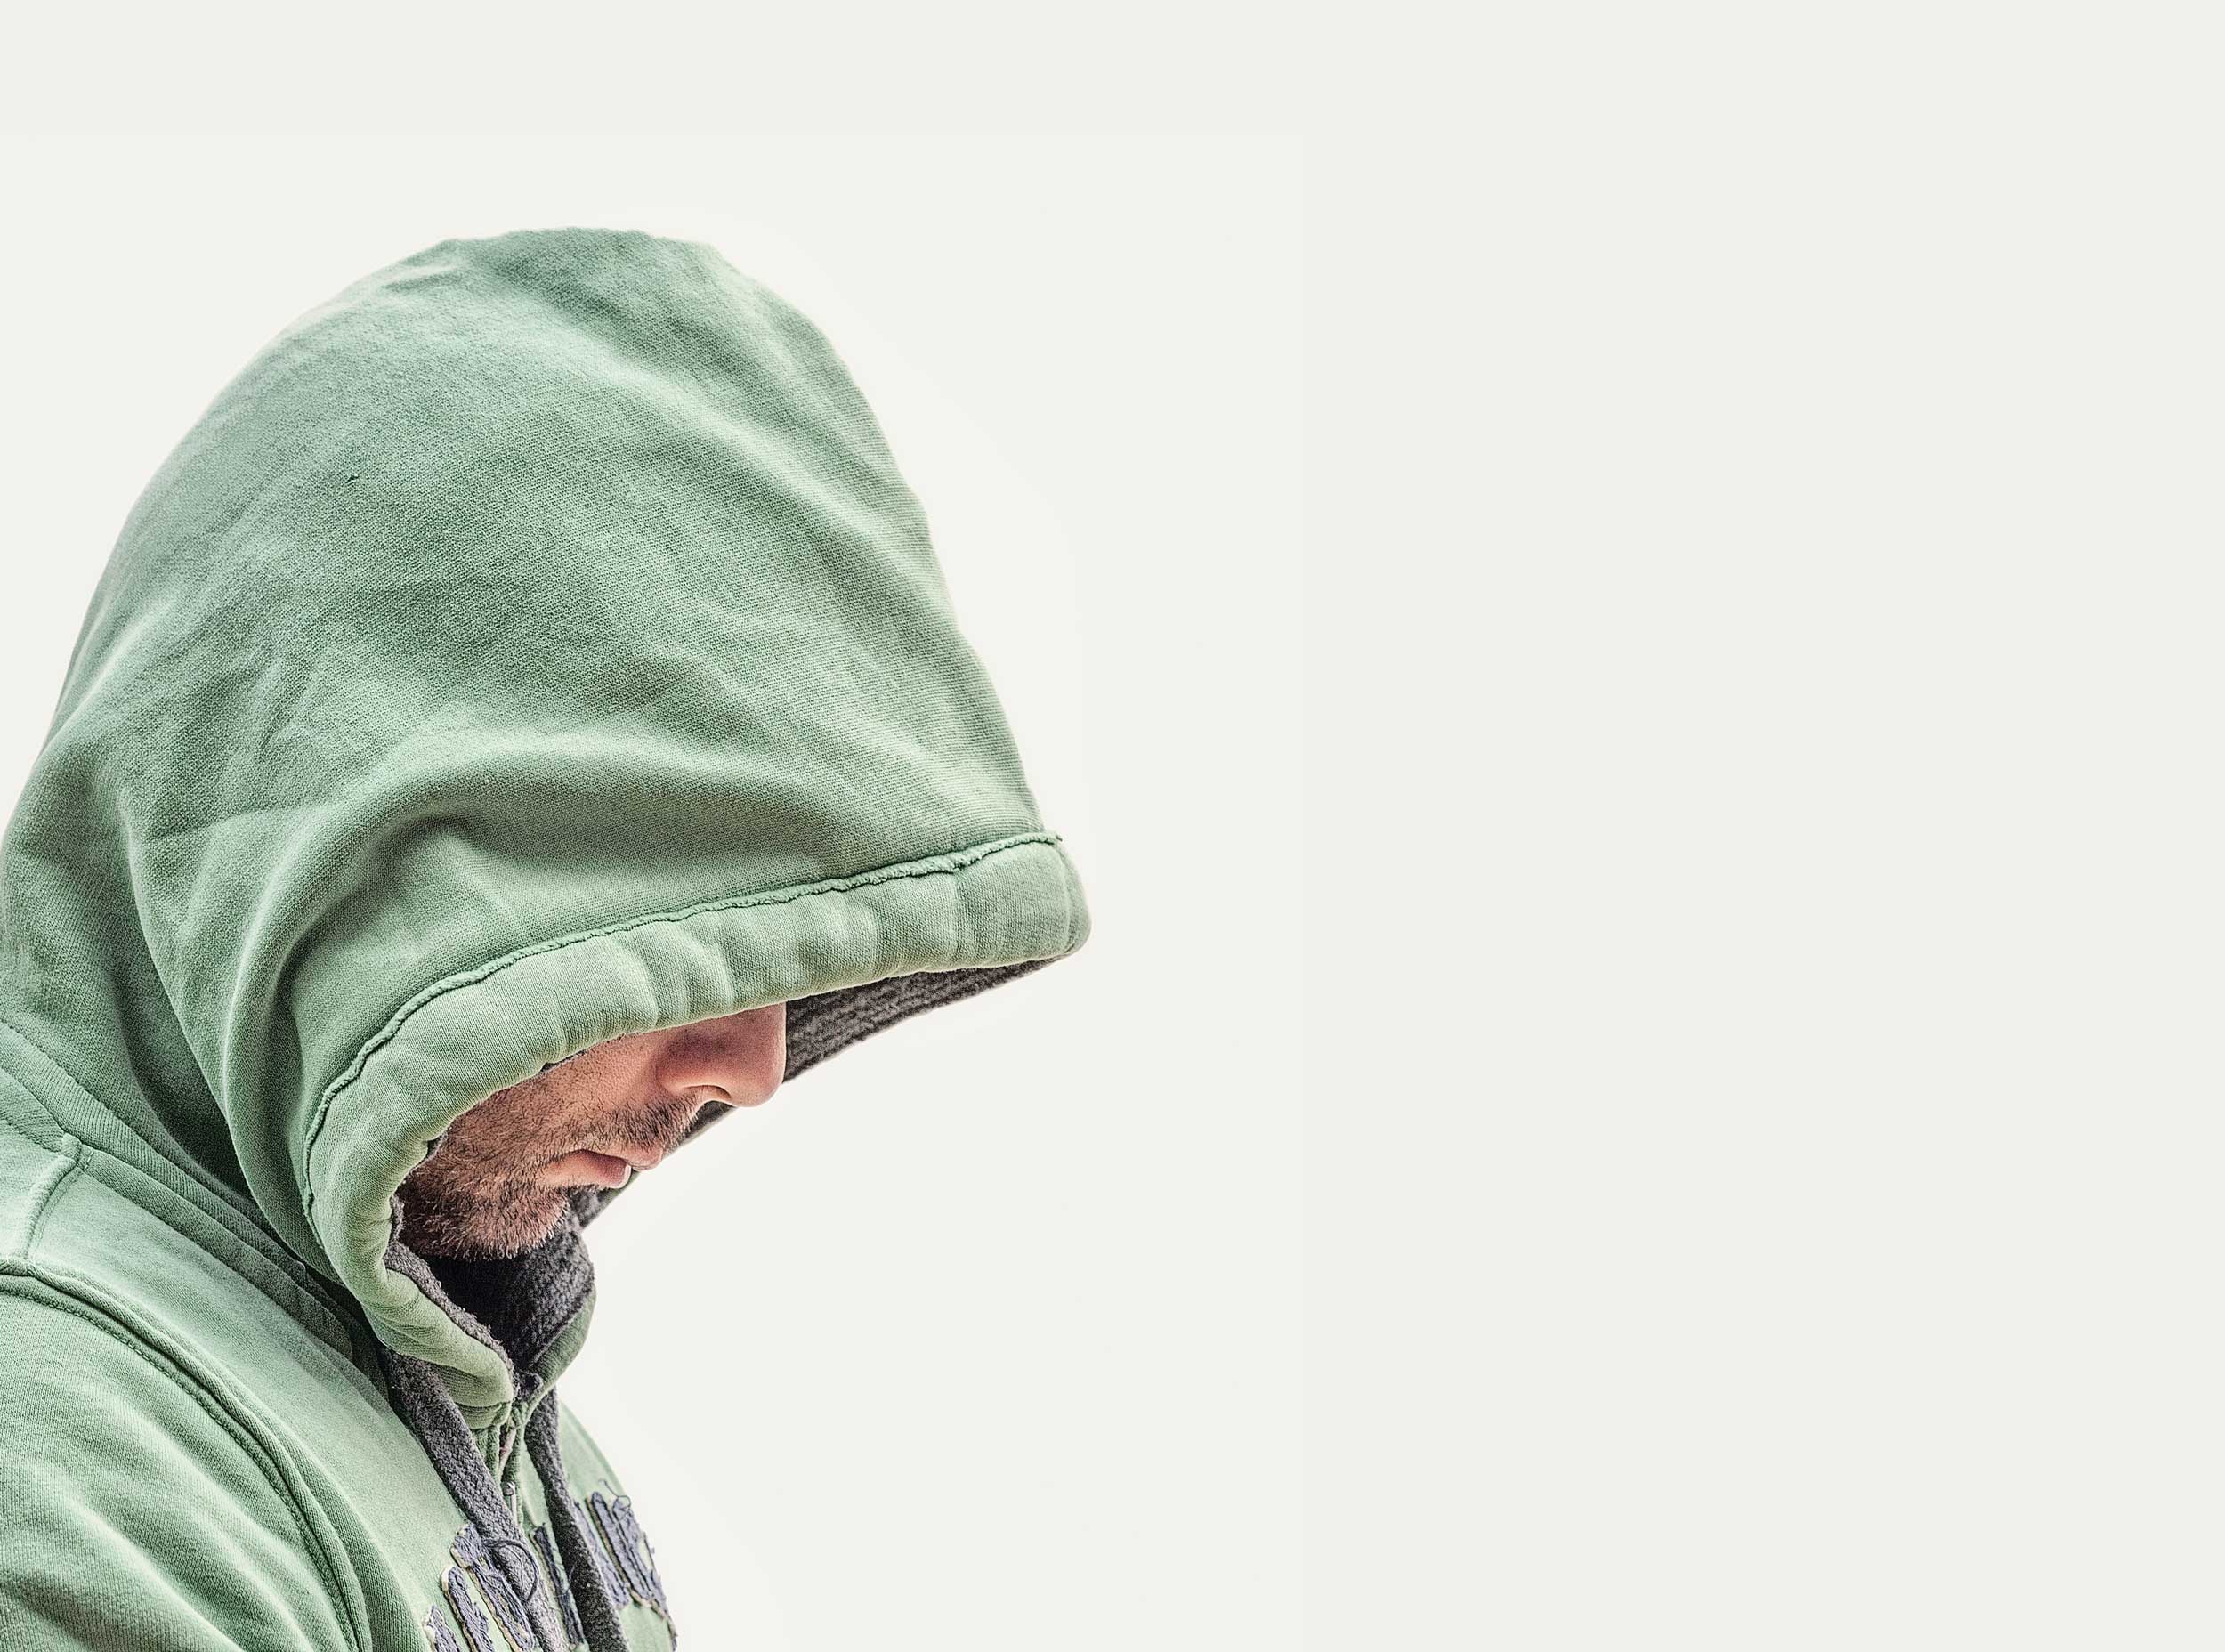 Man in hood jumper struggling from addiction